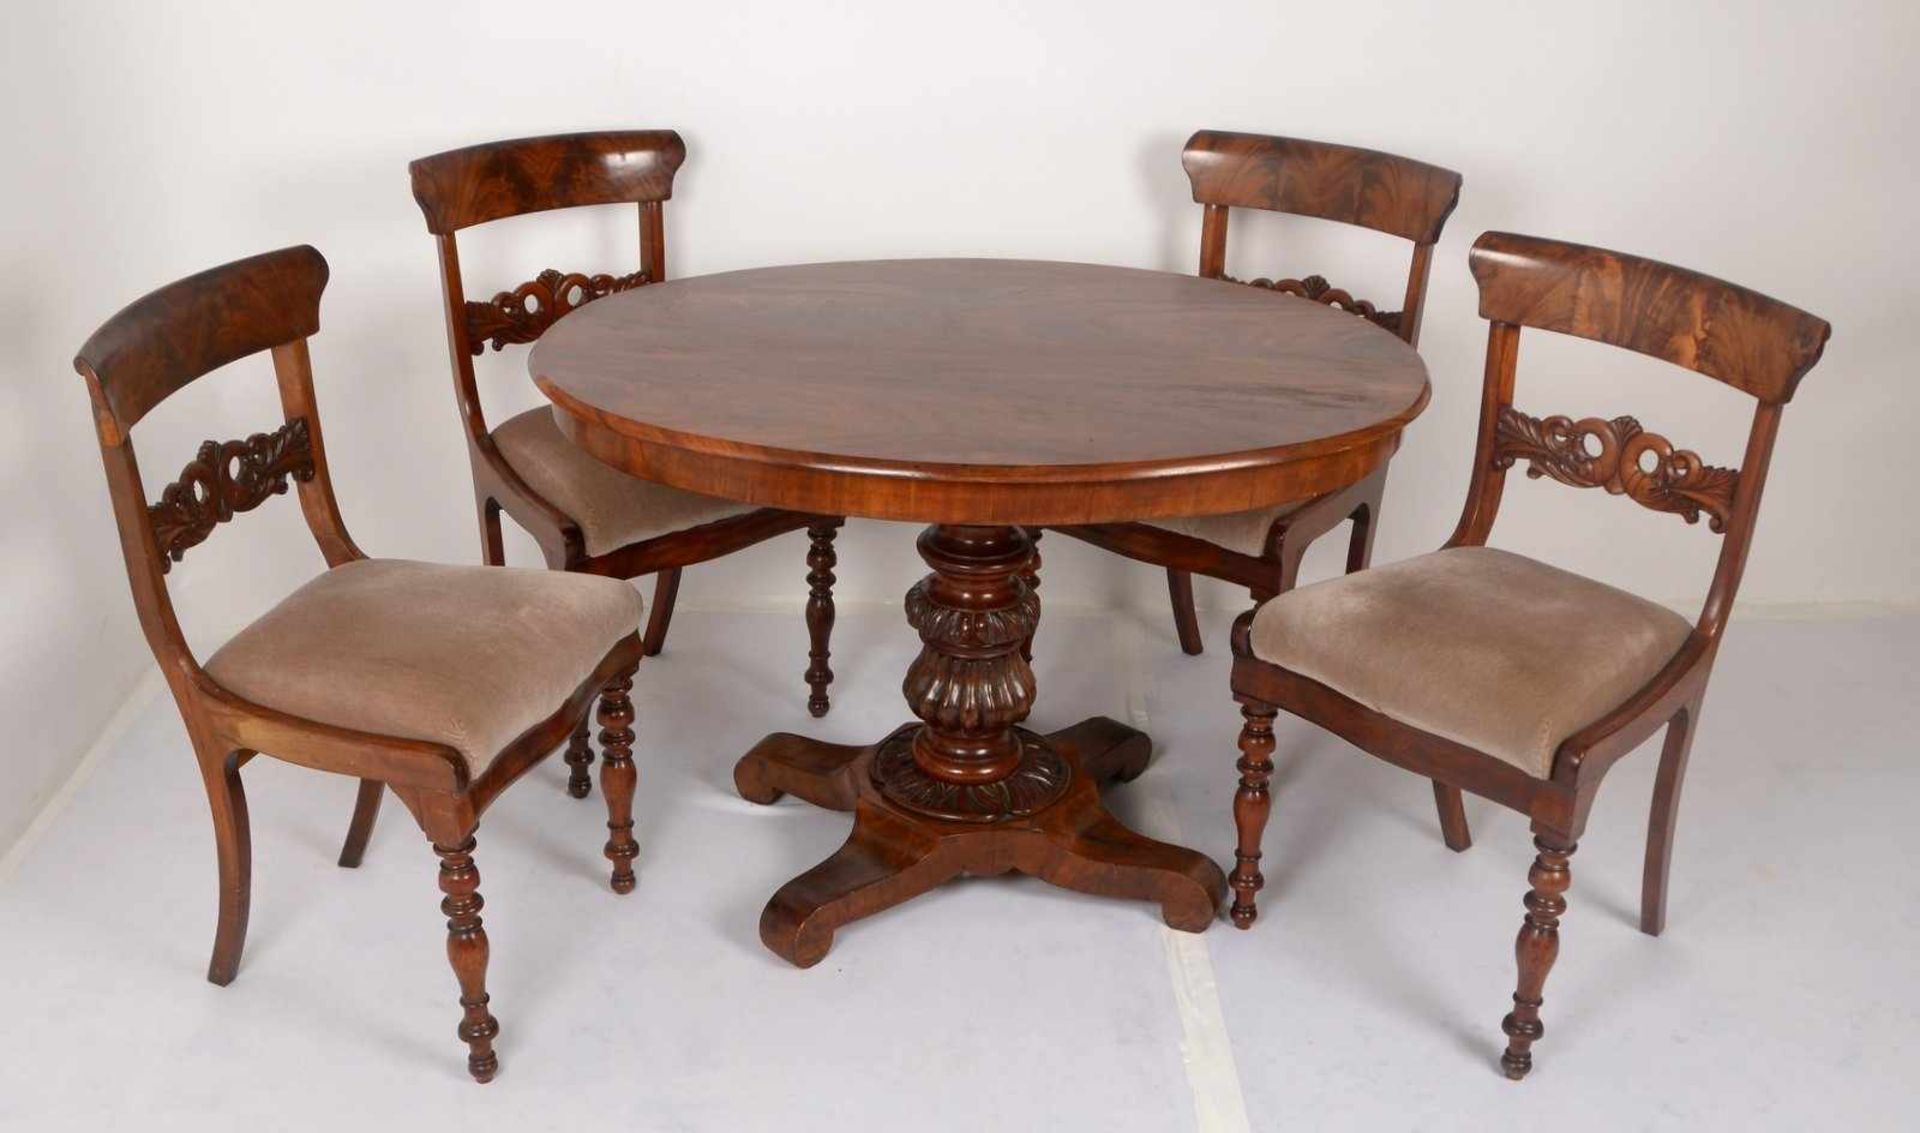 Sitzensemble (Biedermeier), Mahagonifurnier/Nussbaum, 5-teilig: 1 Tisch/oval und Satz Stühle, 4